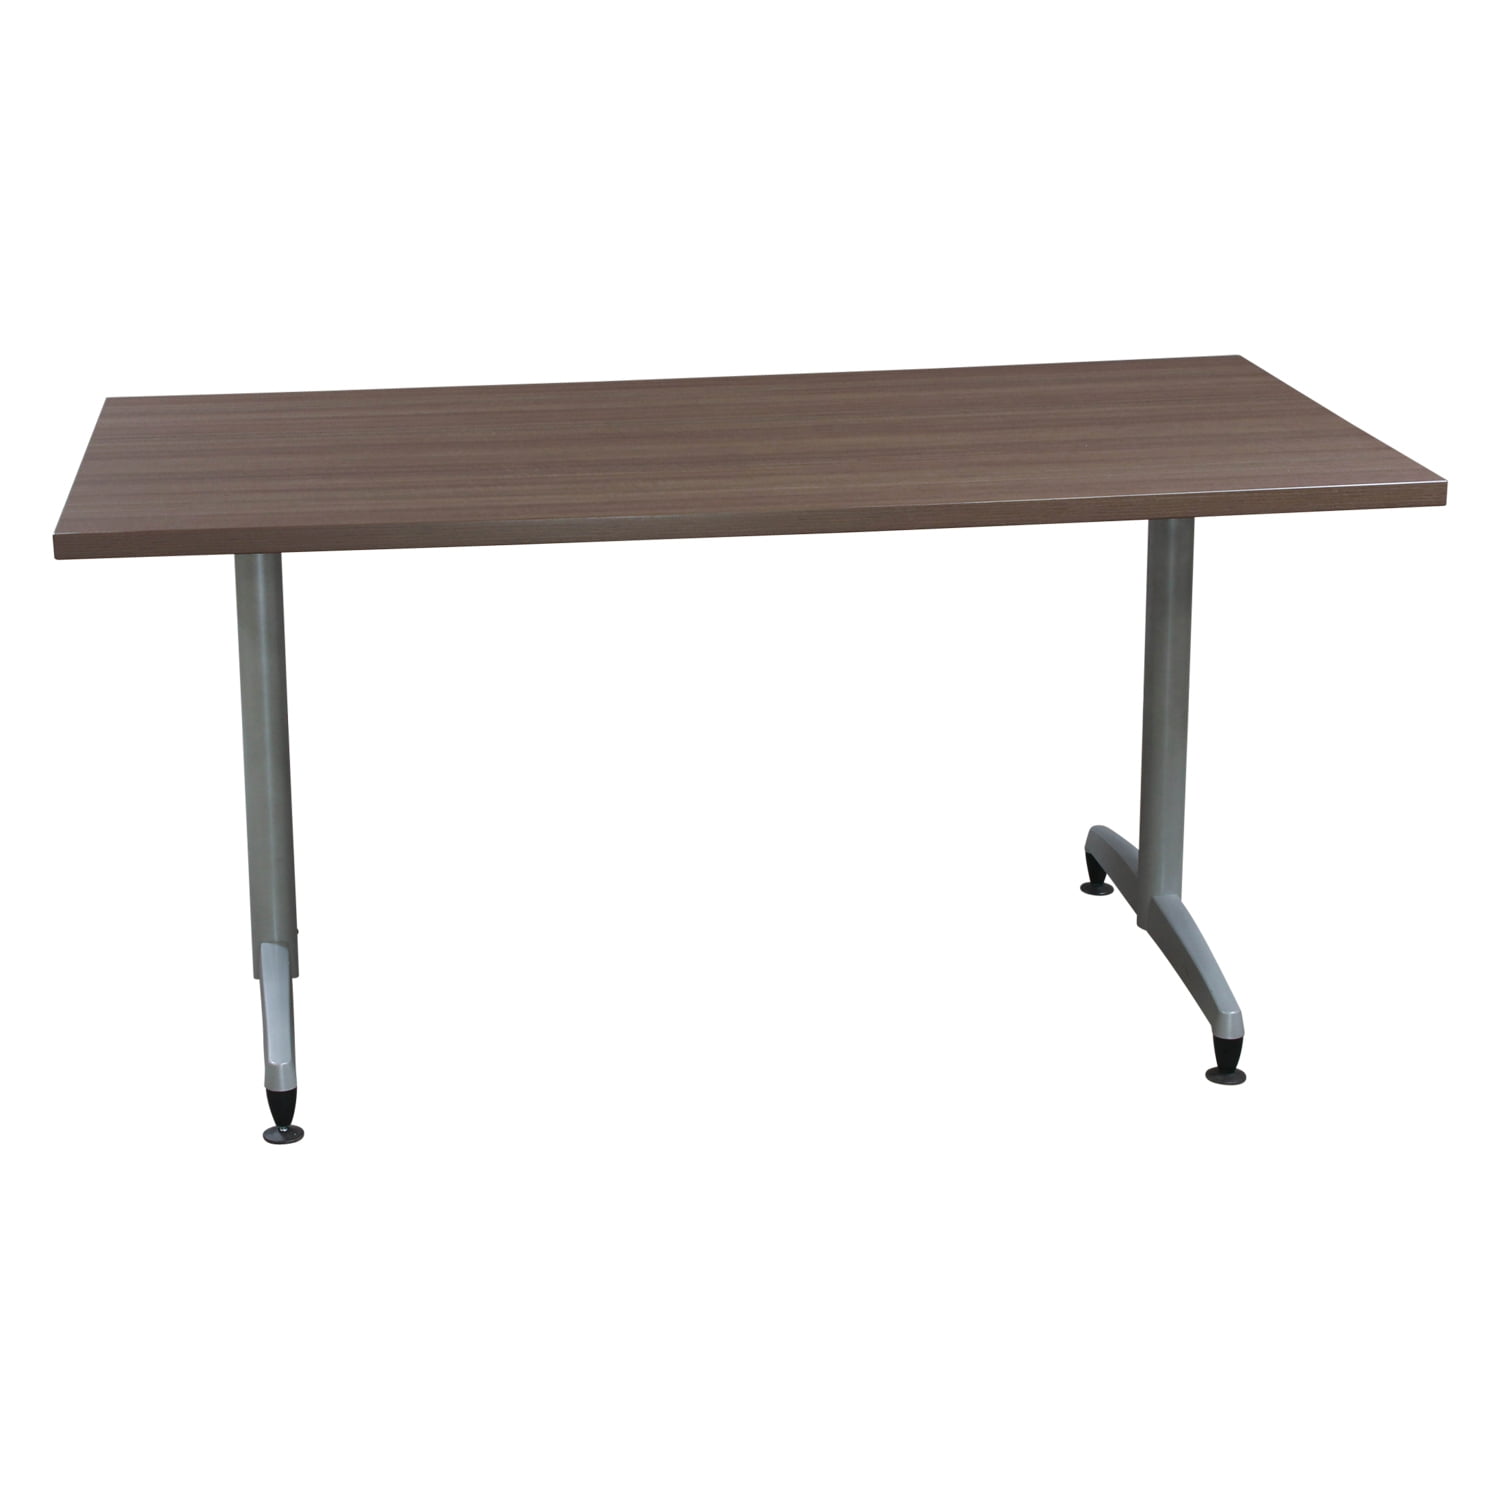 Community Furniture Used 30x60 Laminate Table, Teak